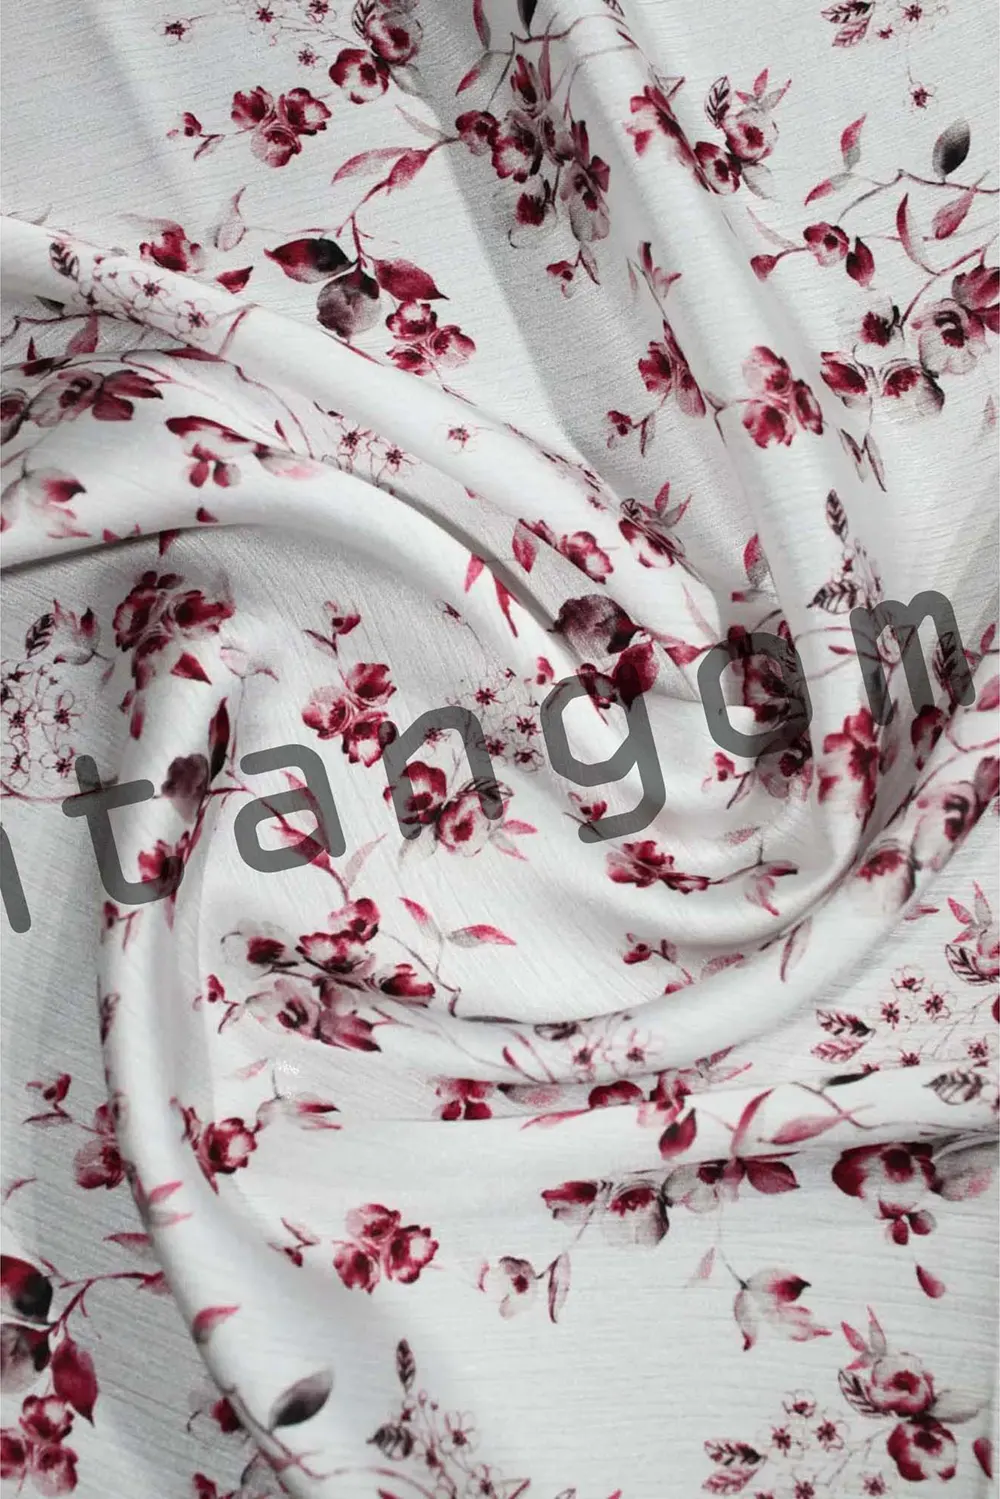 floral tango dress fabric